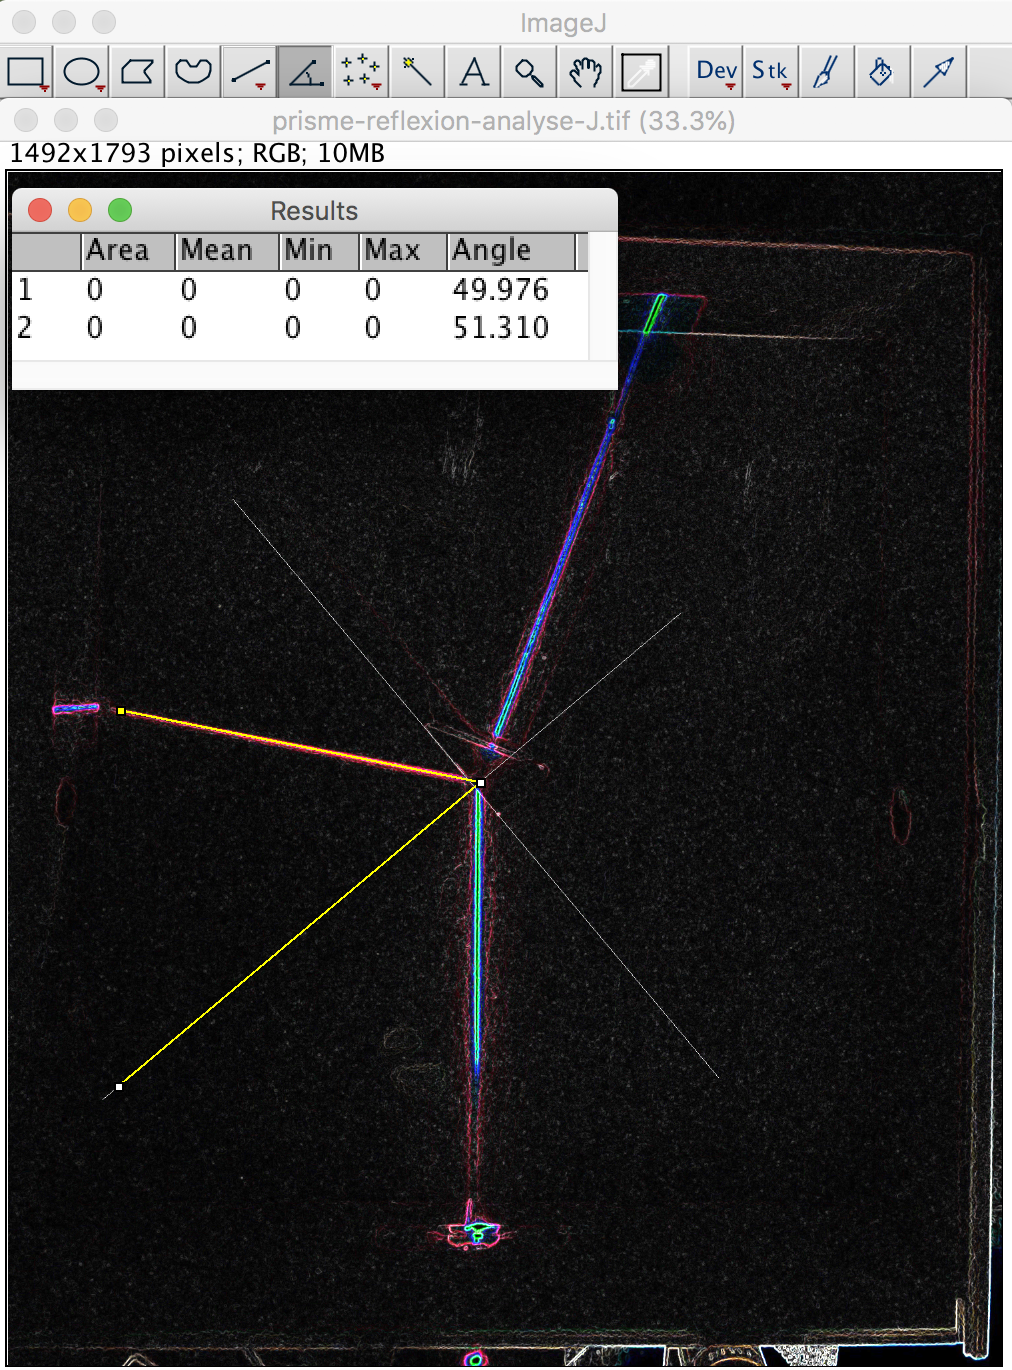 Mesure des angles d'incidence et réfléchi sur une face du prisme à l'aide du logiciel Image J